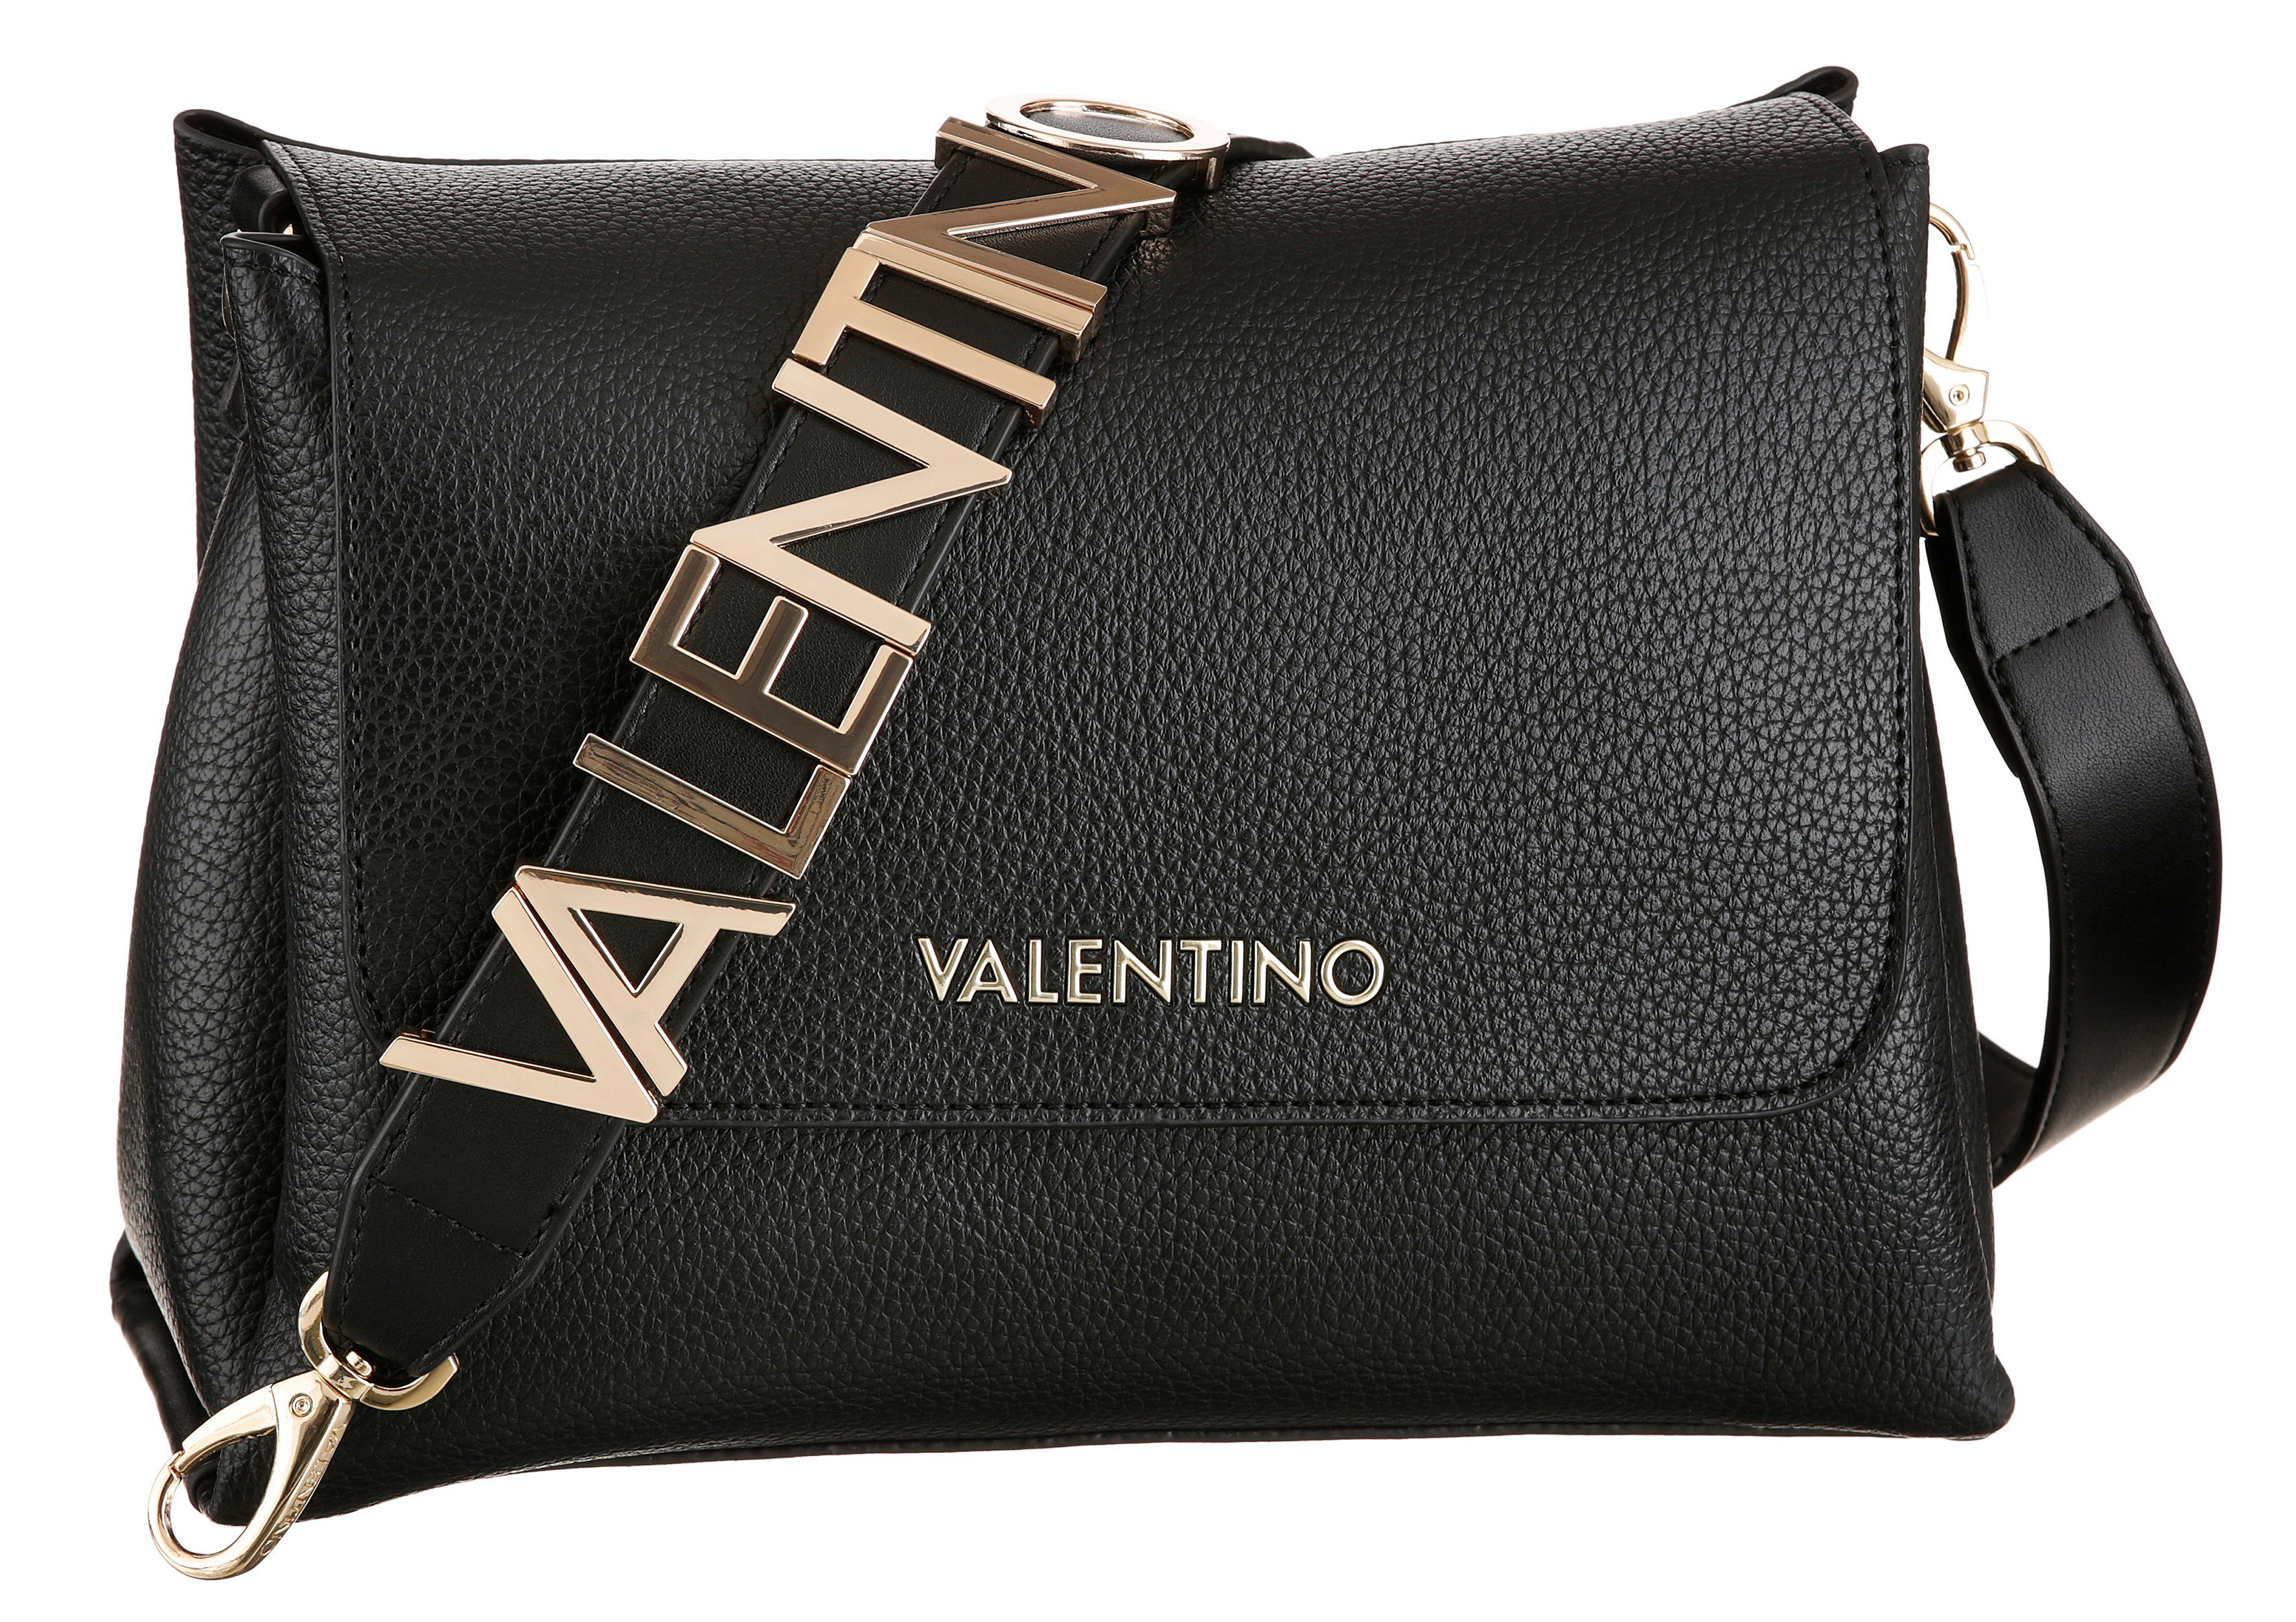 Valentino Damen Umhängetaschen online kaufen | OTTO